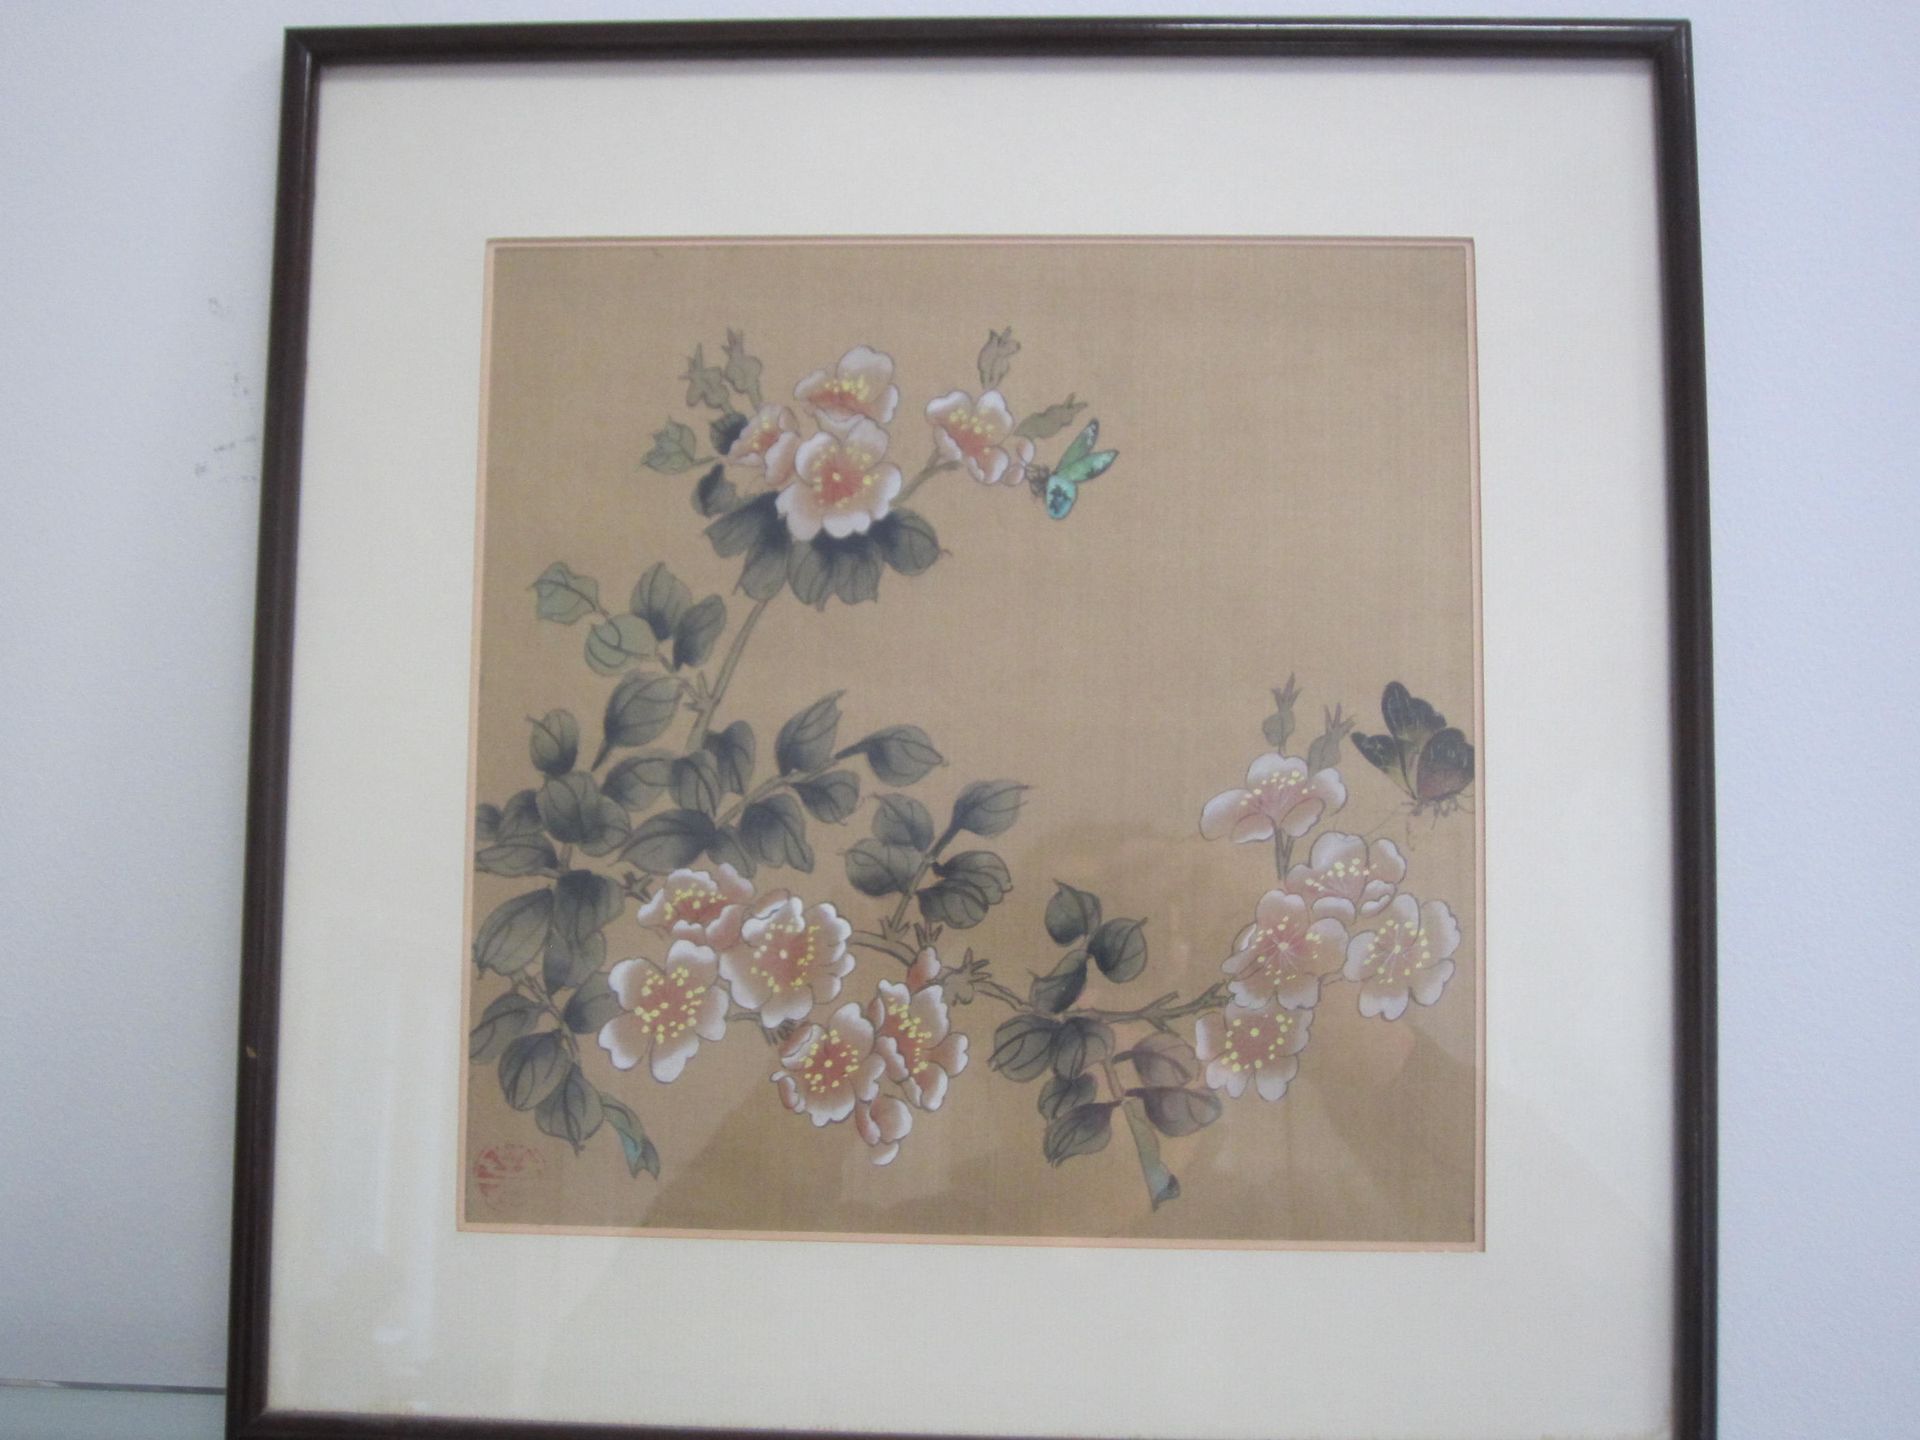 Pintura asiática en con flores y mariposas, a la izquierda, 35,5cmx35,5cm, buen estado